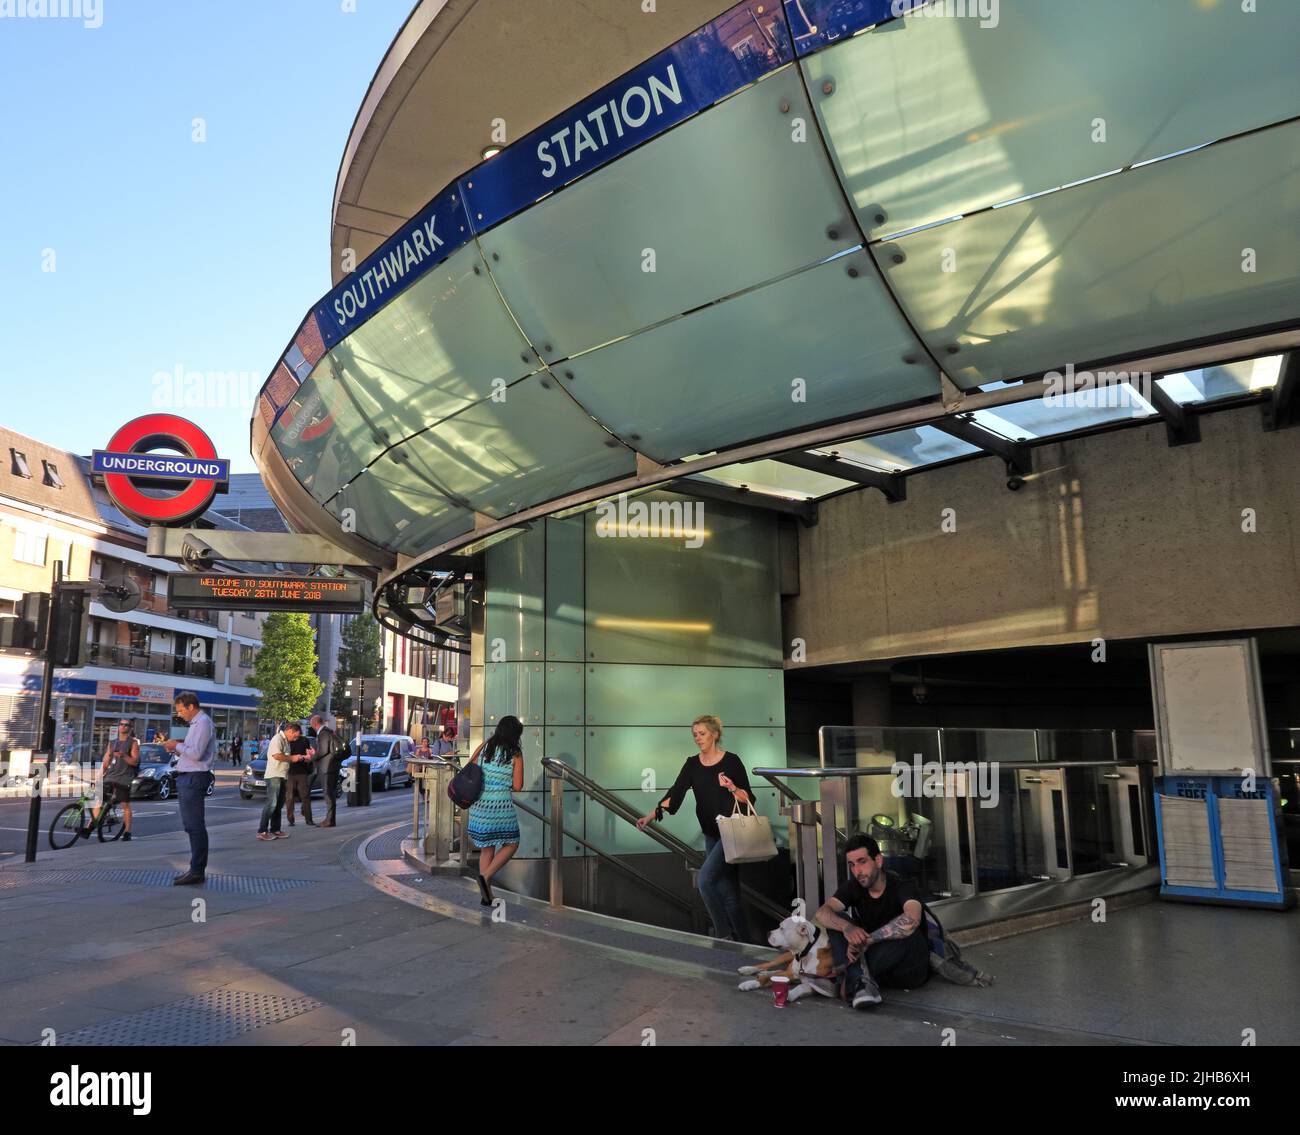 Station de métro Southwark, London Underground transport, sud de Londres, transports intégrés en centre-ville, Angleterre, Royaume-Uni Banque D'Images